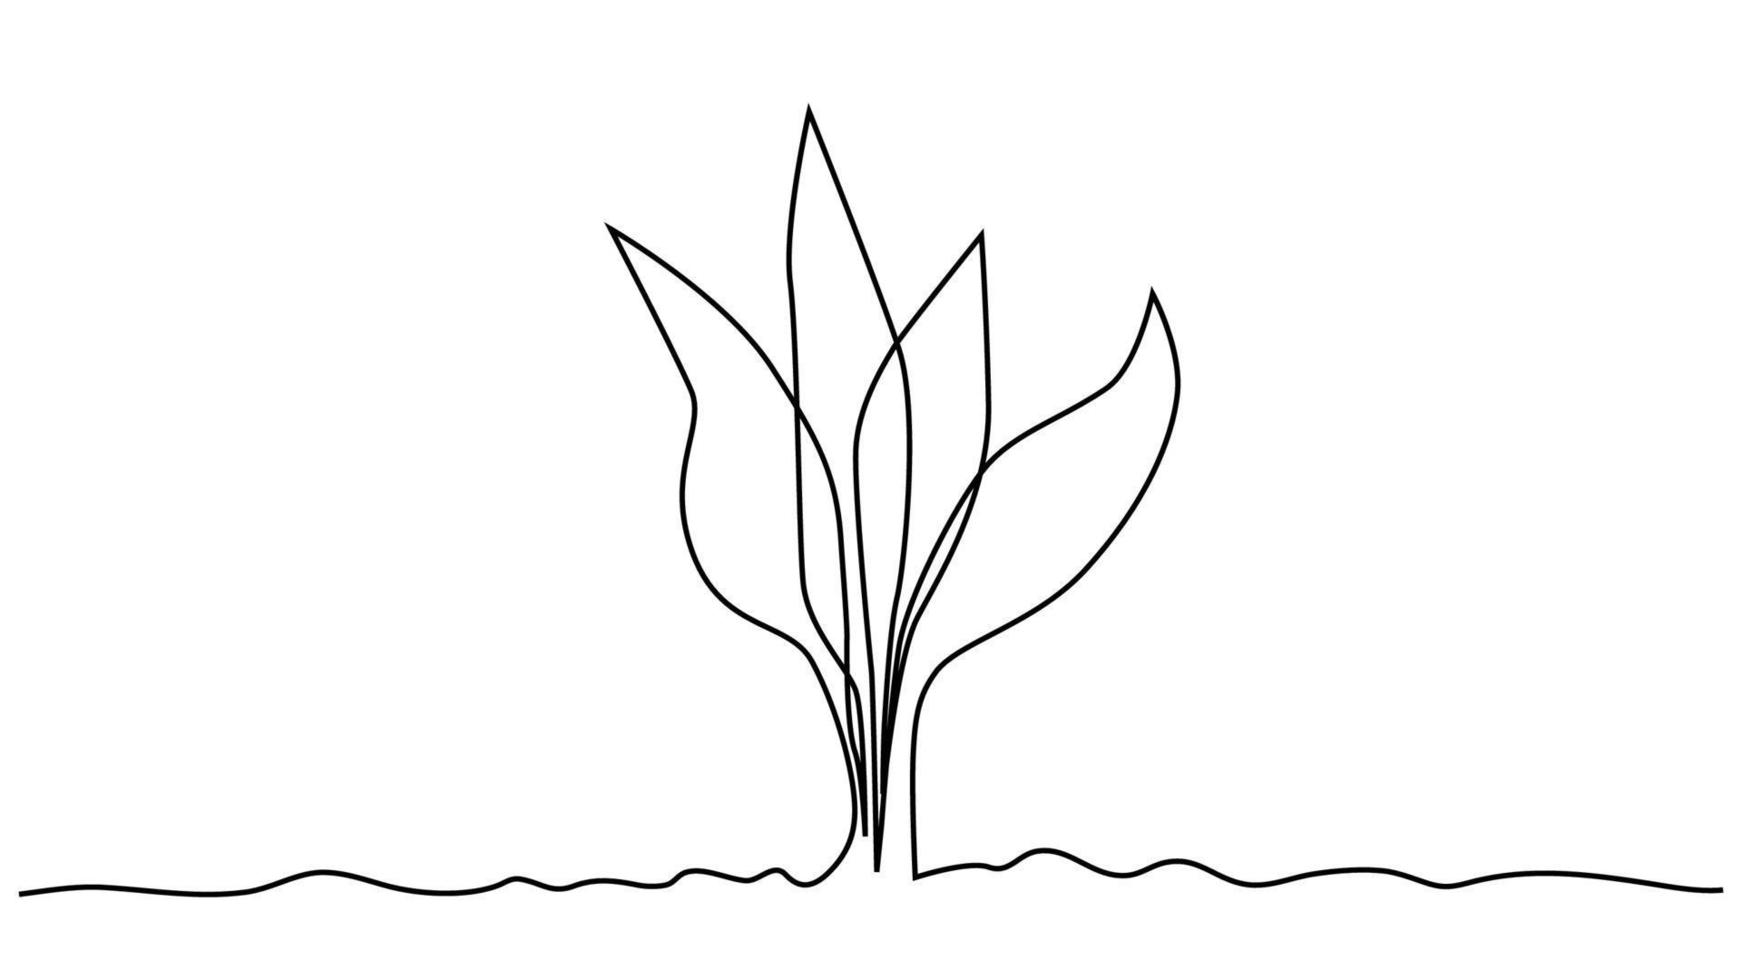 brote de crecimiento de arte de línea continua única. planta hojas semilla crecer suelo plántula eco natural granja concepto diseño vector